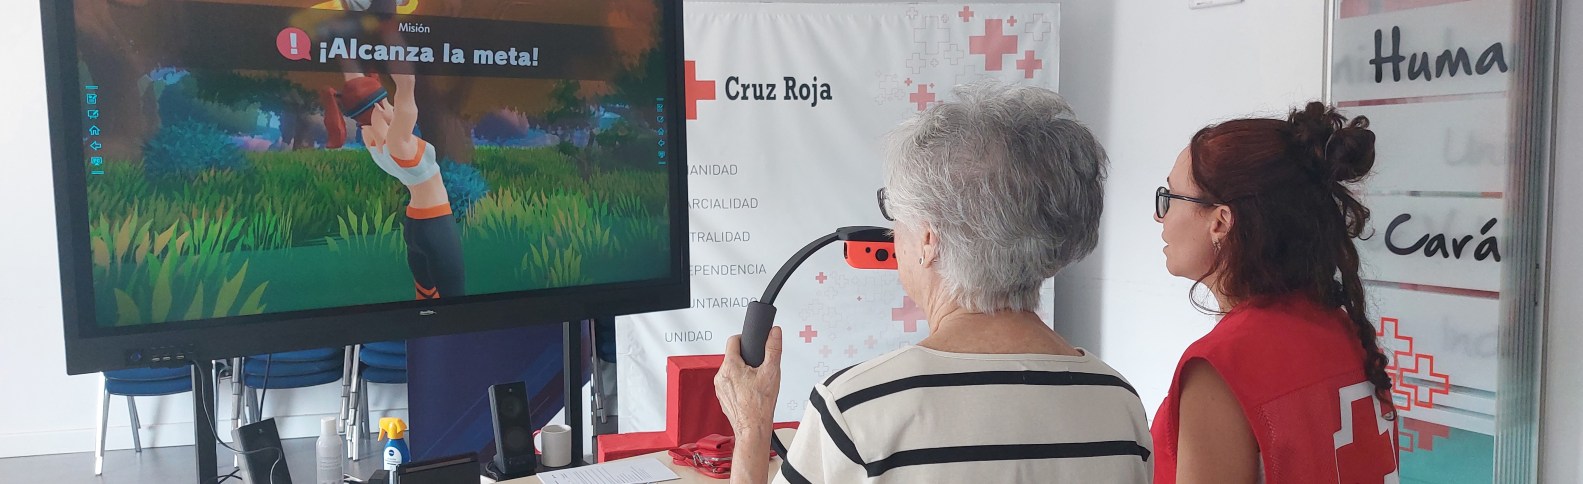 Un videojuego para favorecer el ejercicio físico en personas mayores